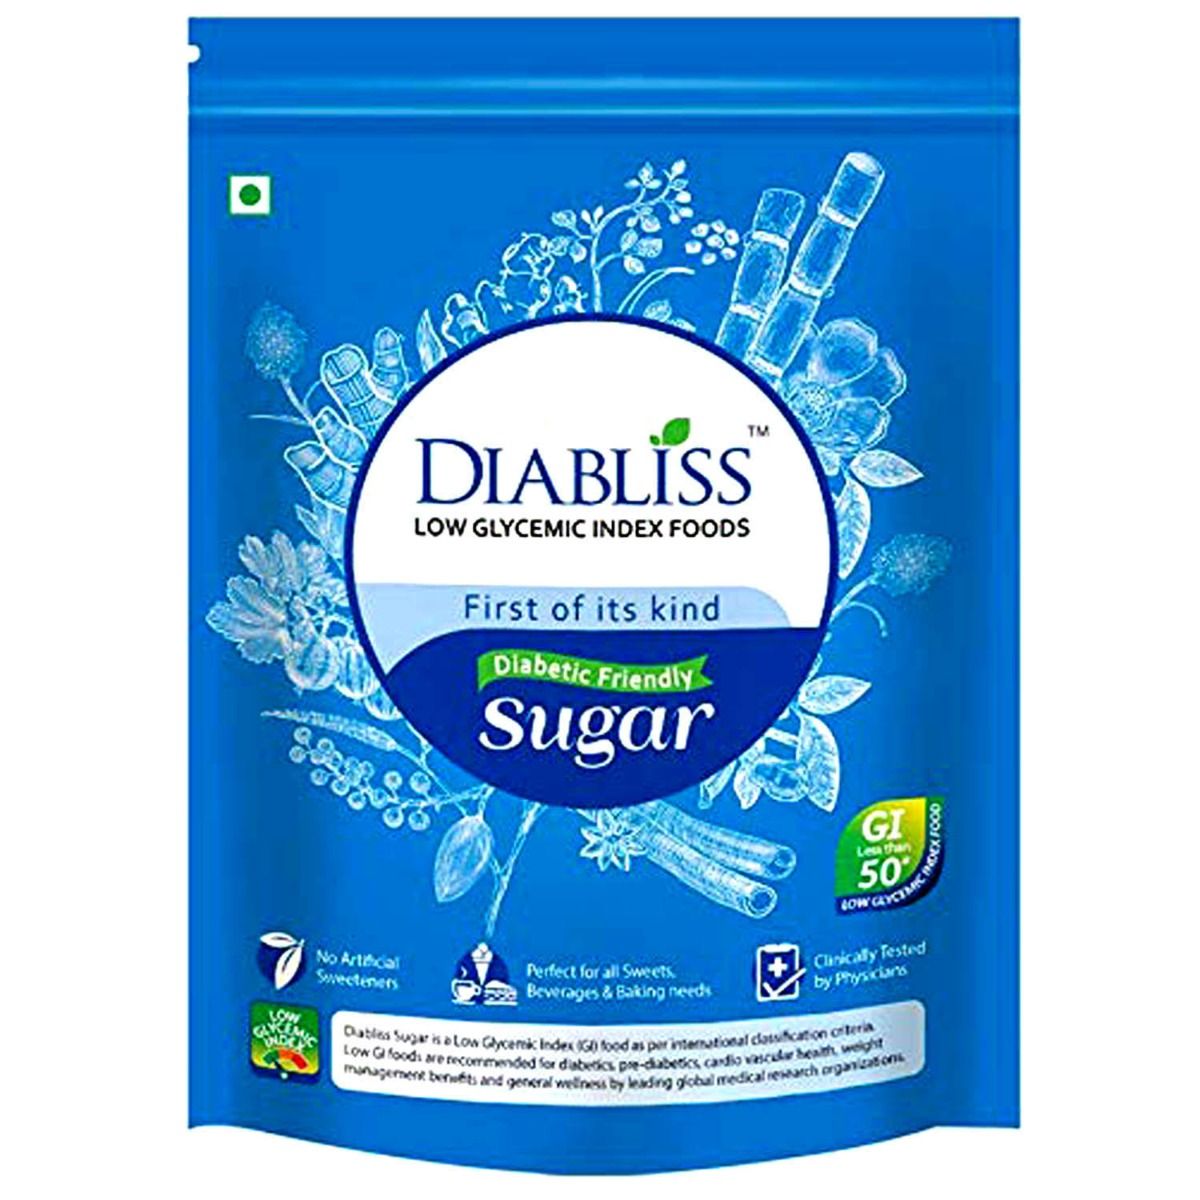 Buy Diabliss Sugar, 500 gm Refill Pack Online